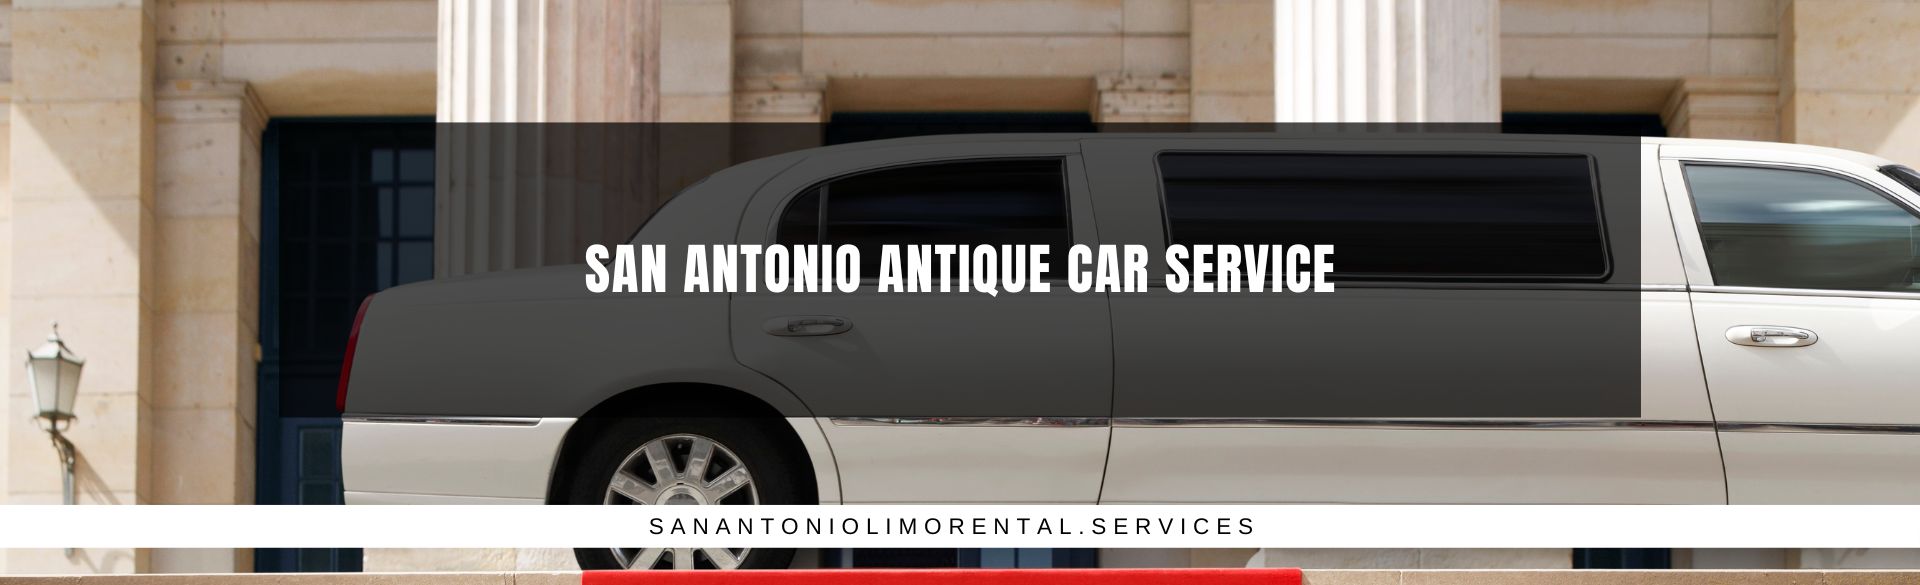 San Antonio Antique Car Service